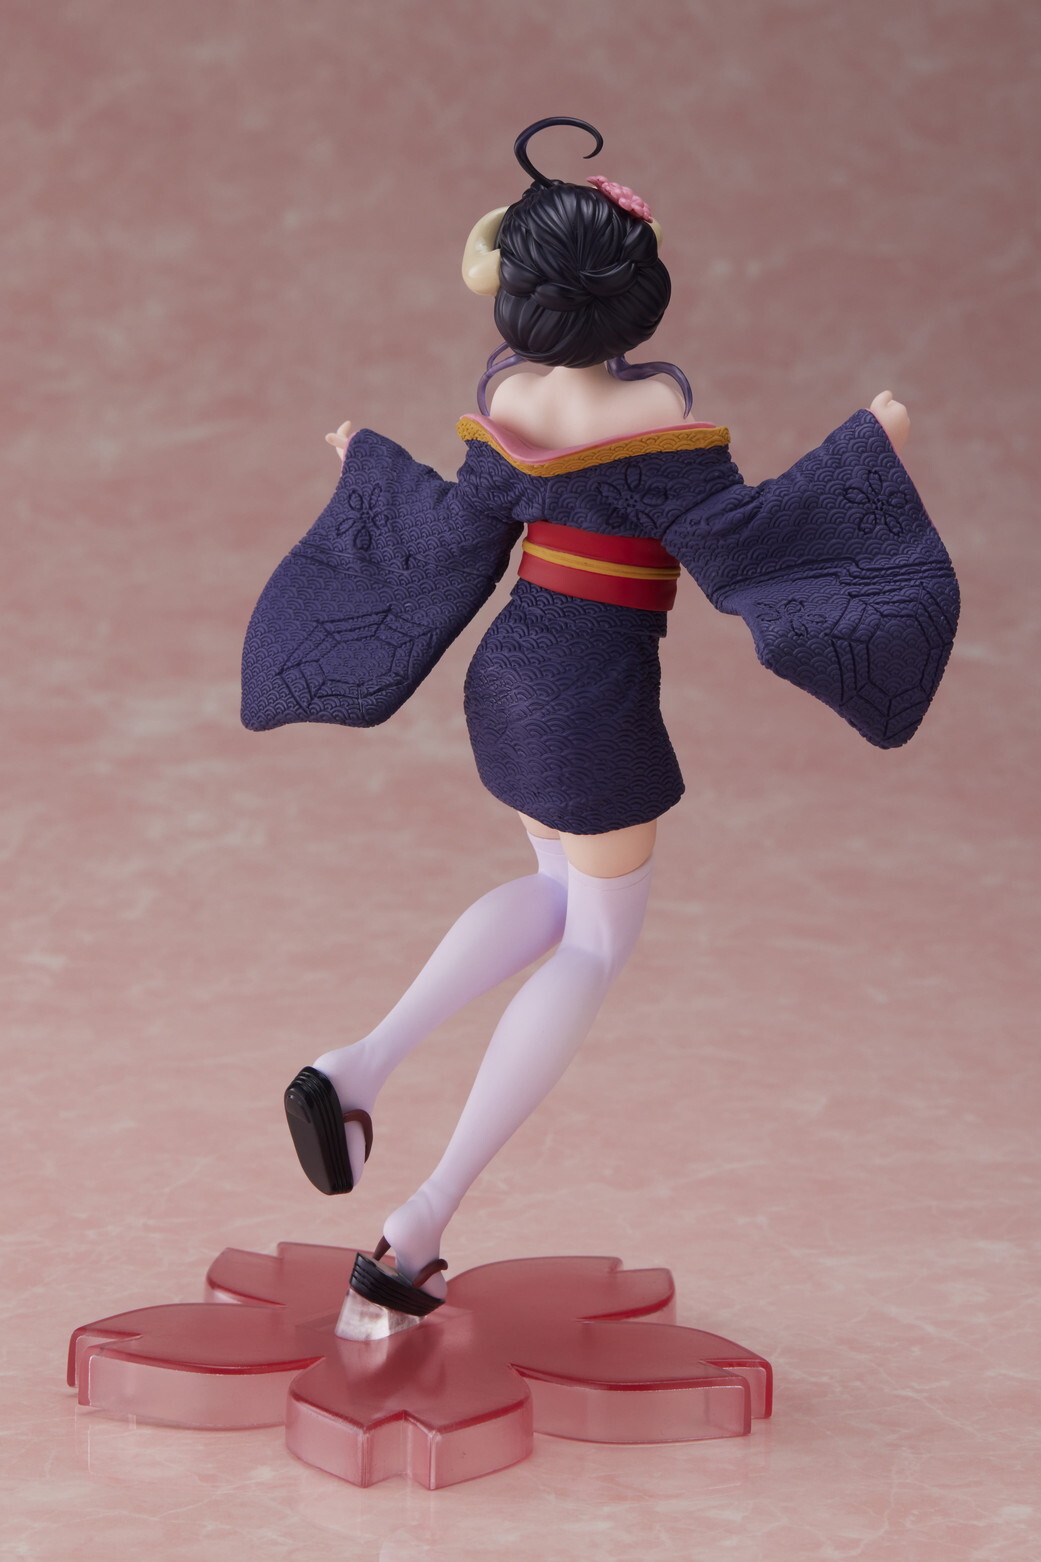 Poupées Anime Kimono Girl Action Figure 23cm PVC Mauritius